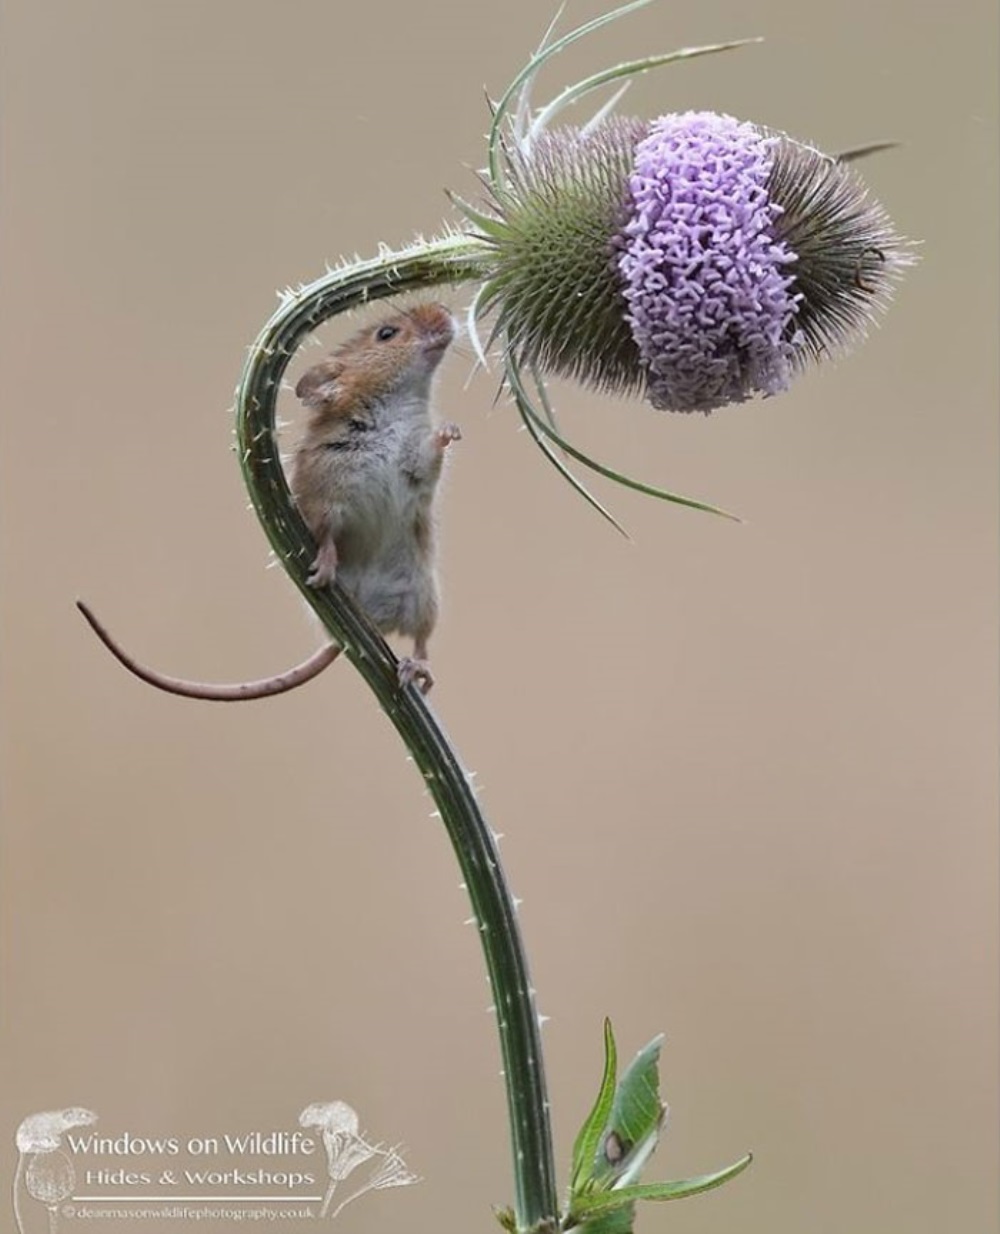 Ratón olfateando una flor